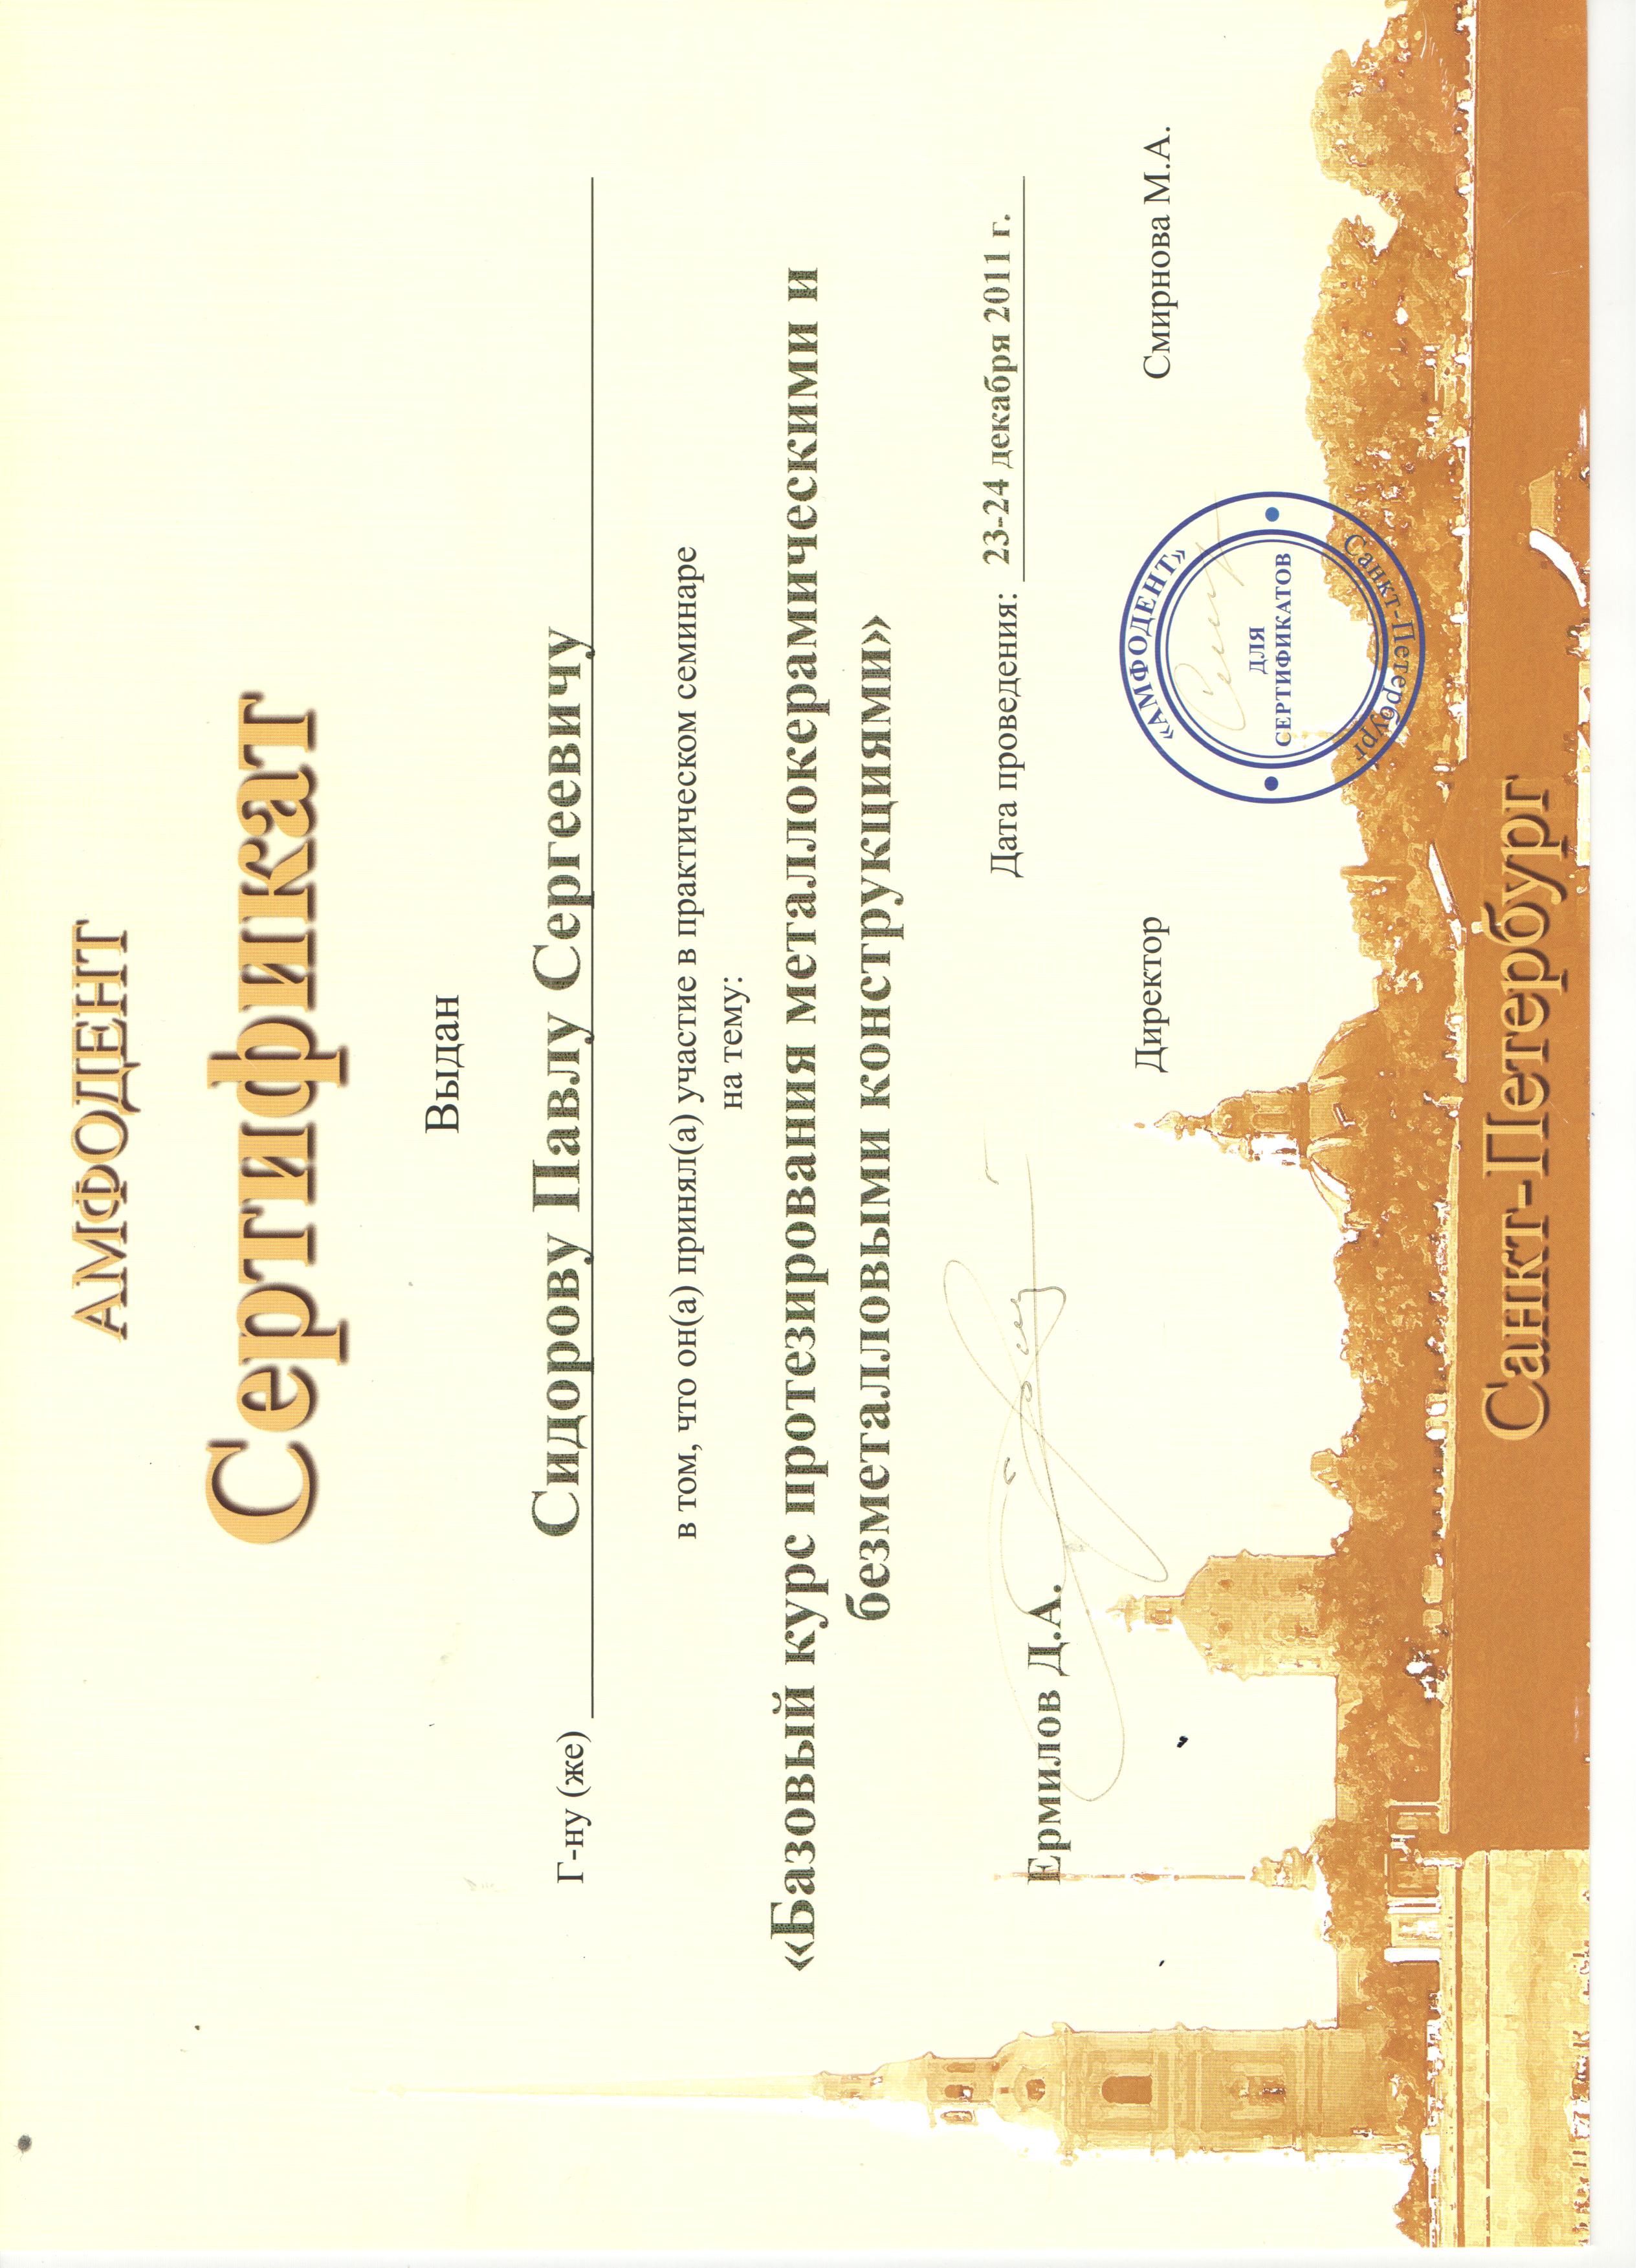 сертификат Кротовой